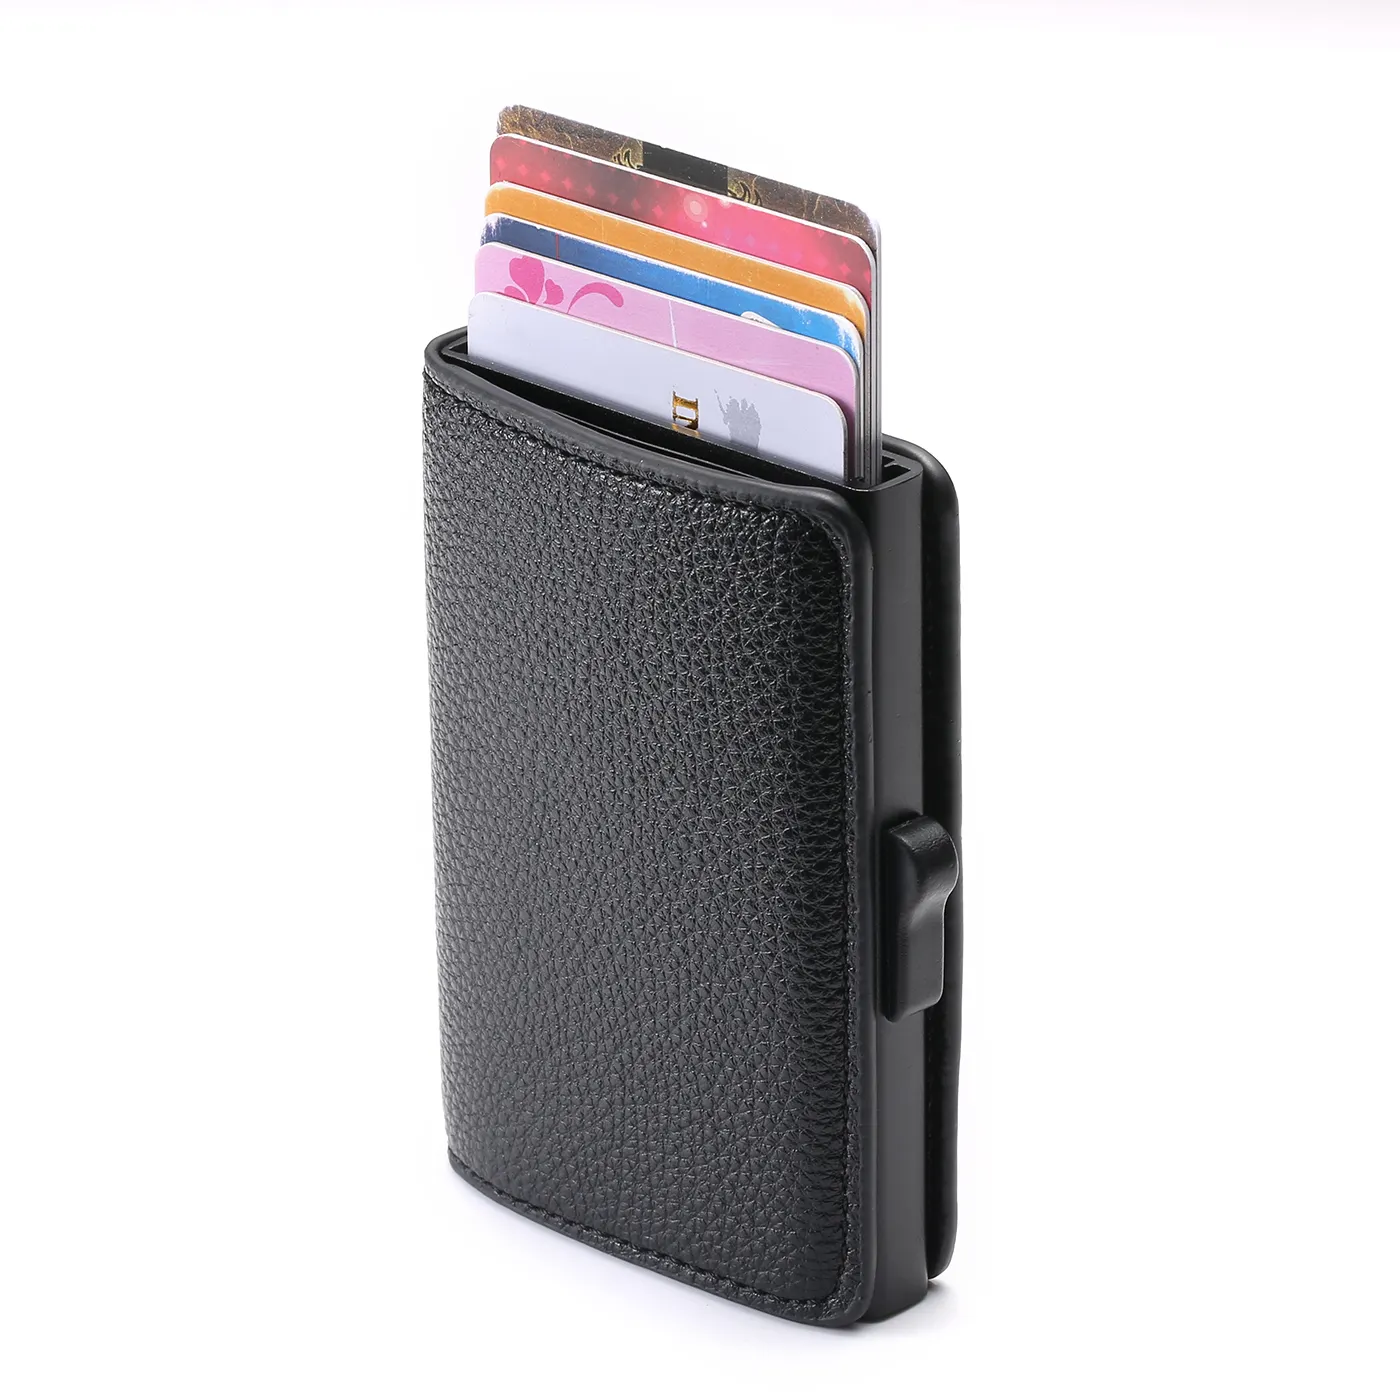 Yumuşak deri cüzdan çok fonksiyonlu para çantası 3 renkler kart durumda RFID engelleme kimlik kartı tutucu